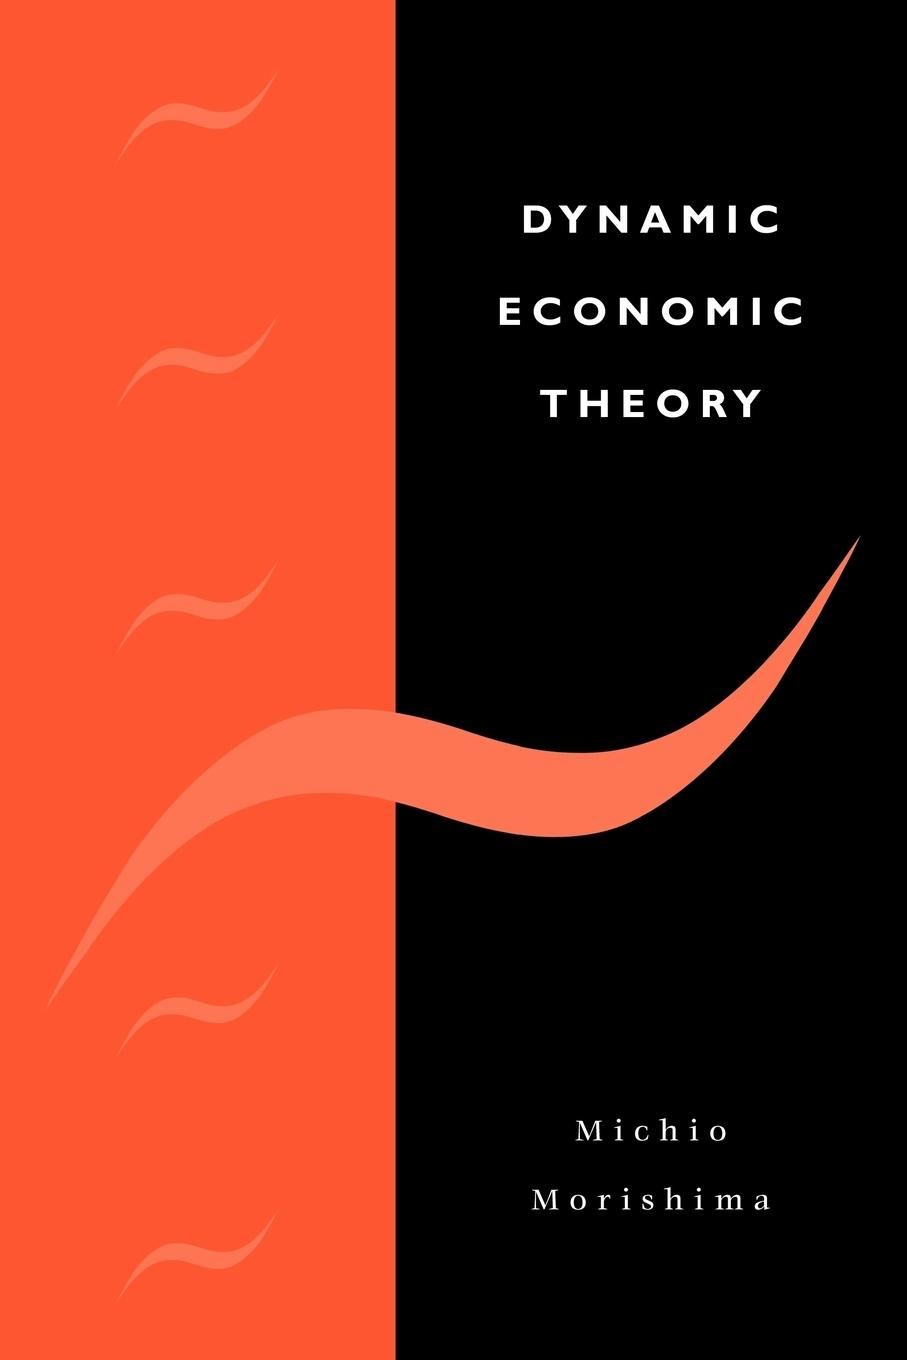 Dynamic Economic Theory - Morishima, Michio|Michio, Morishima